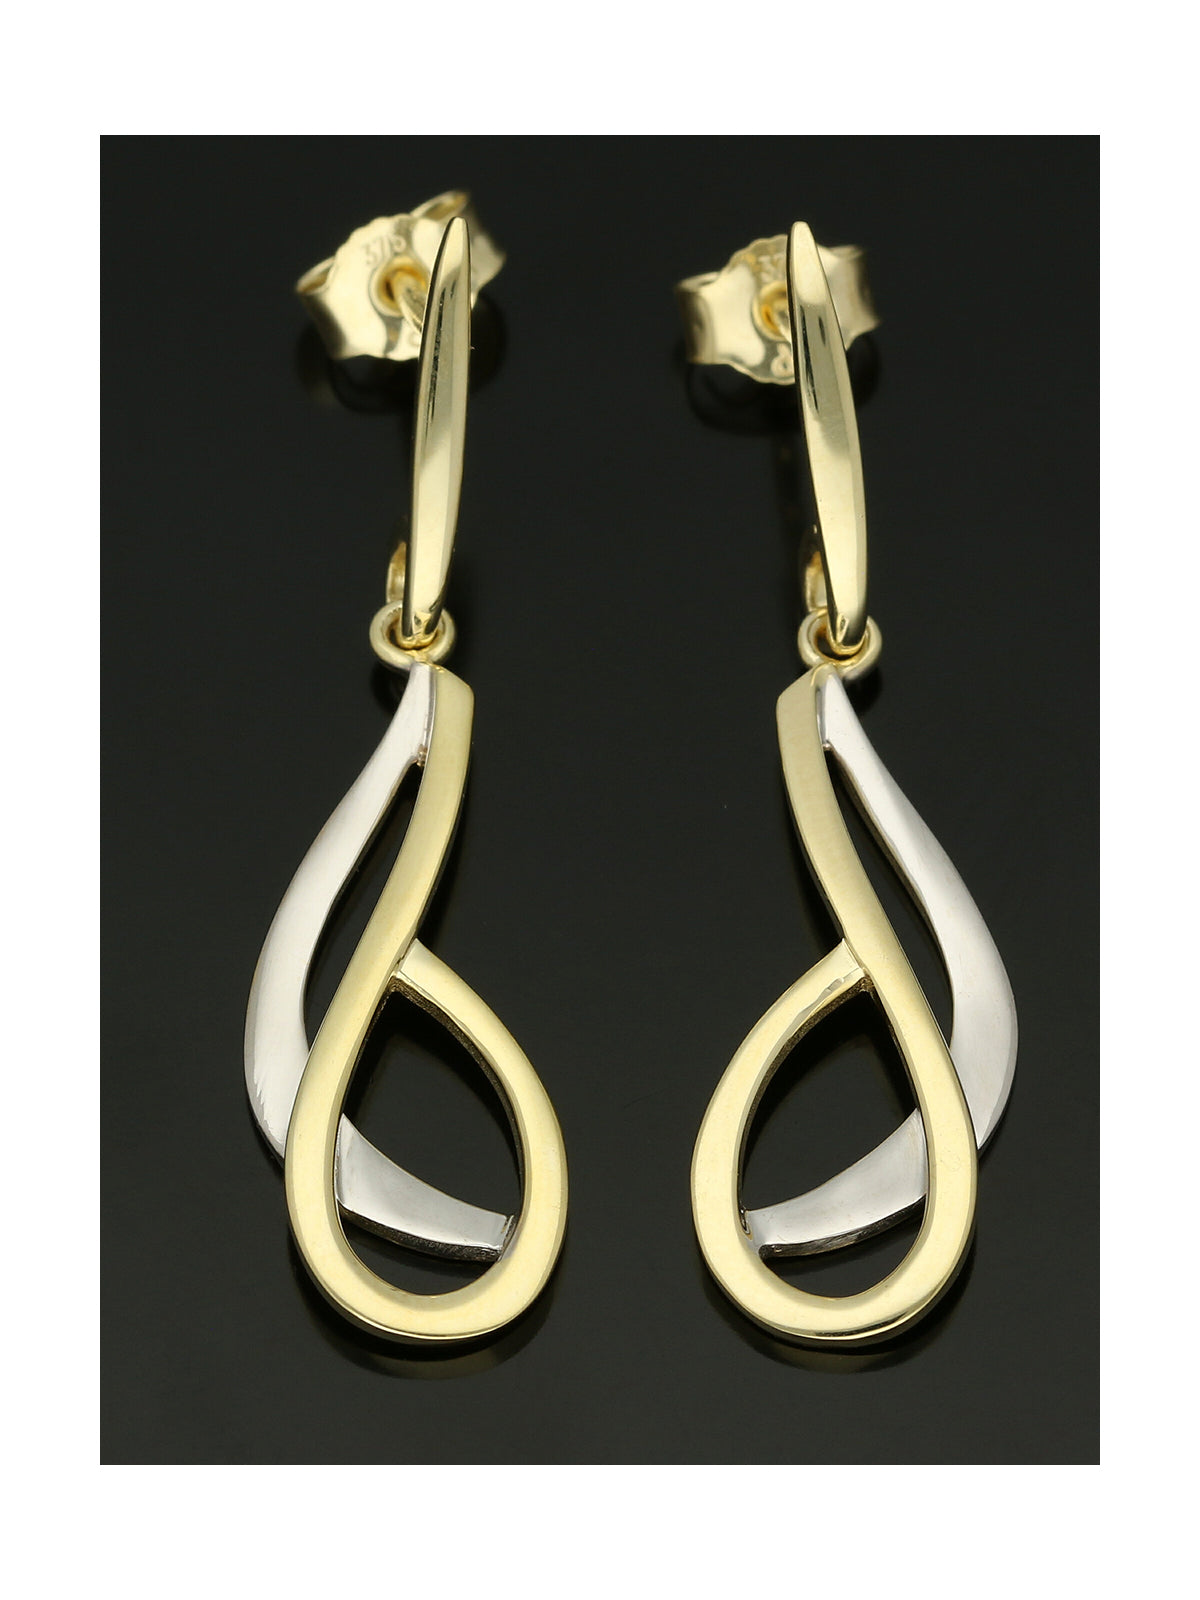 Fancy Loop Drop Earrings in 9ct Yellow & White Gold